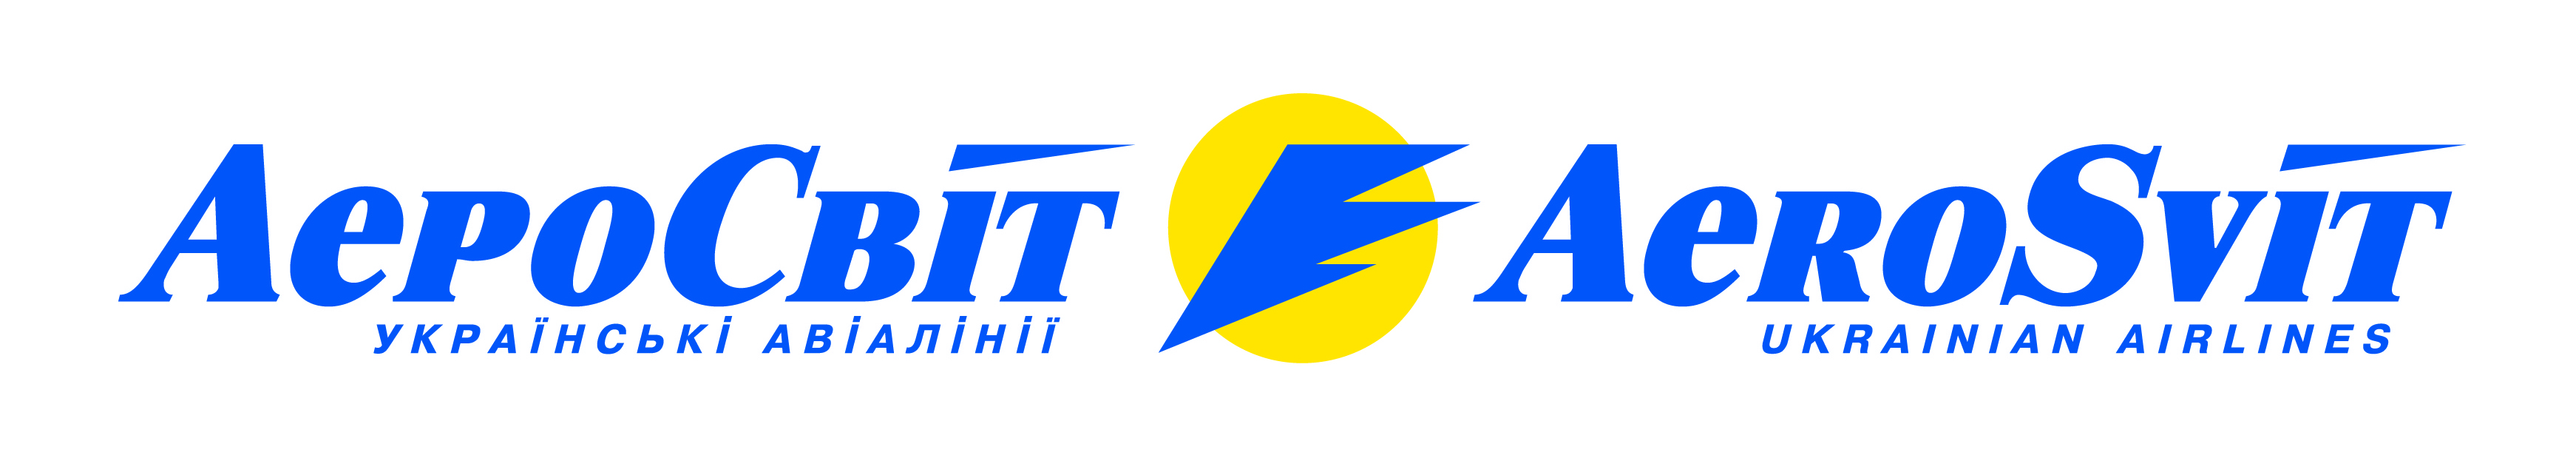 烏克蘭最新logo